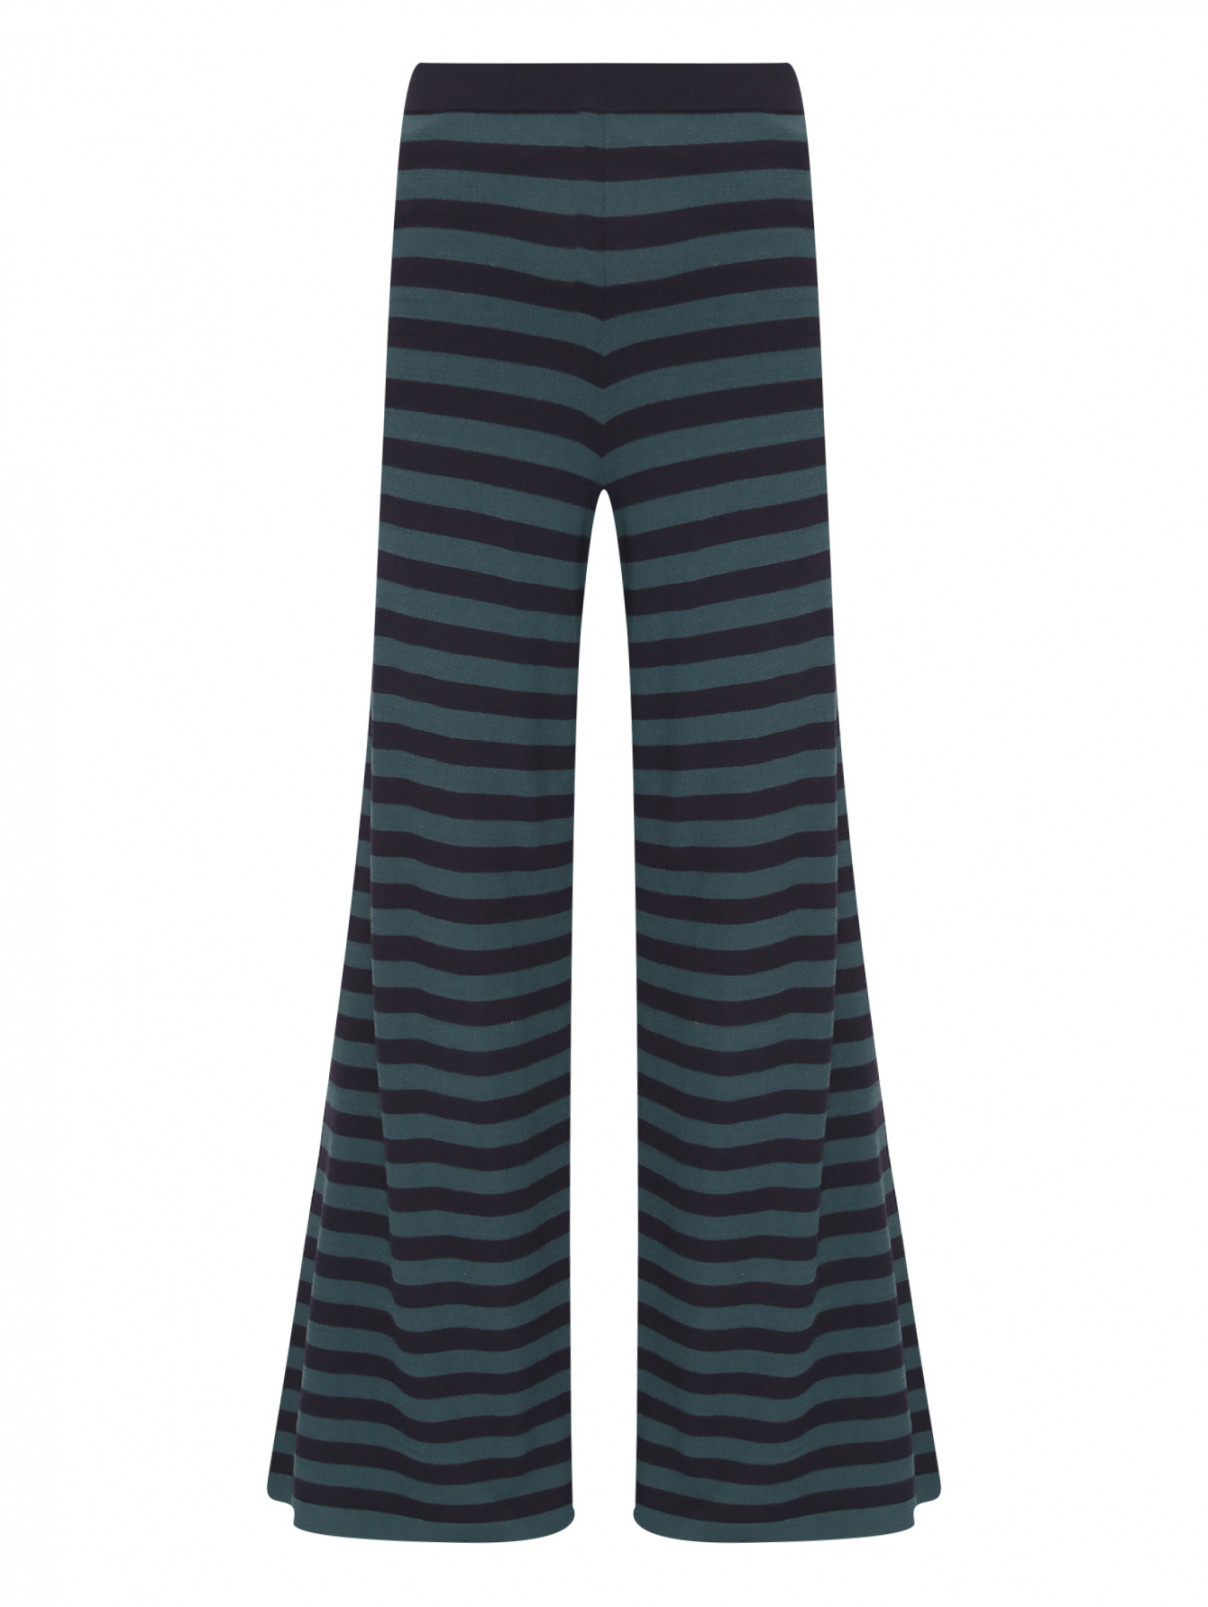 Трикотажные брюки на резинке с узором полоска Weekend Max Mara  –  Общий вид  – Цвет:  Узор